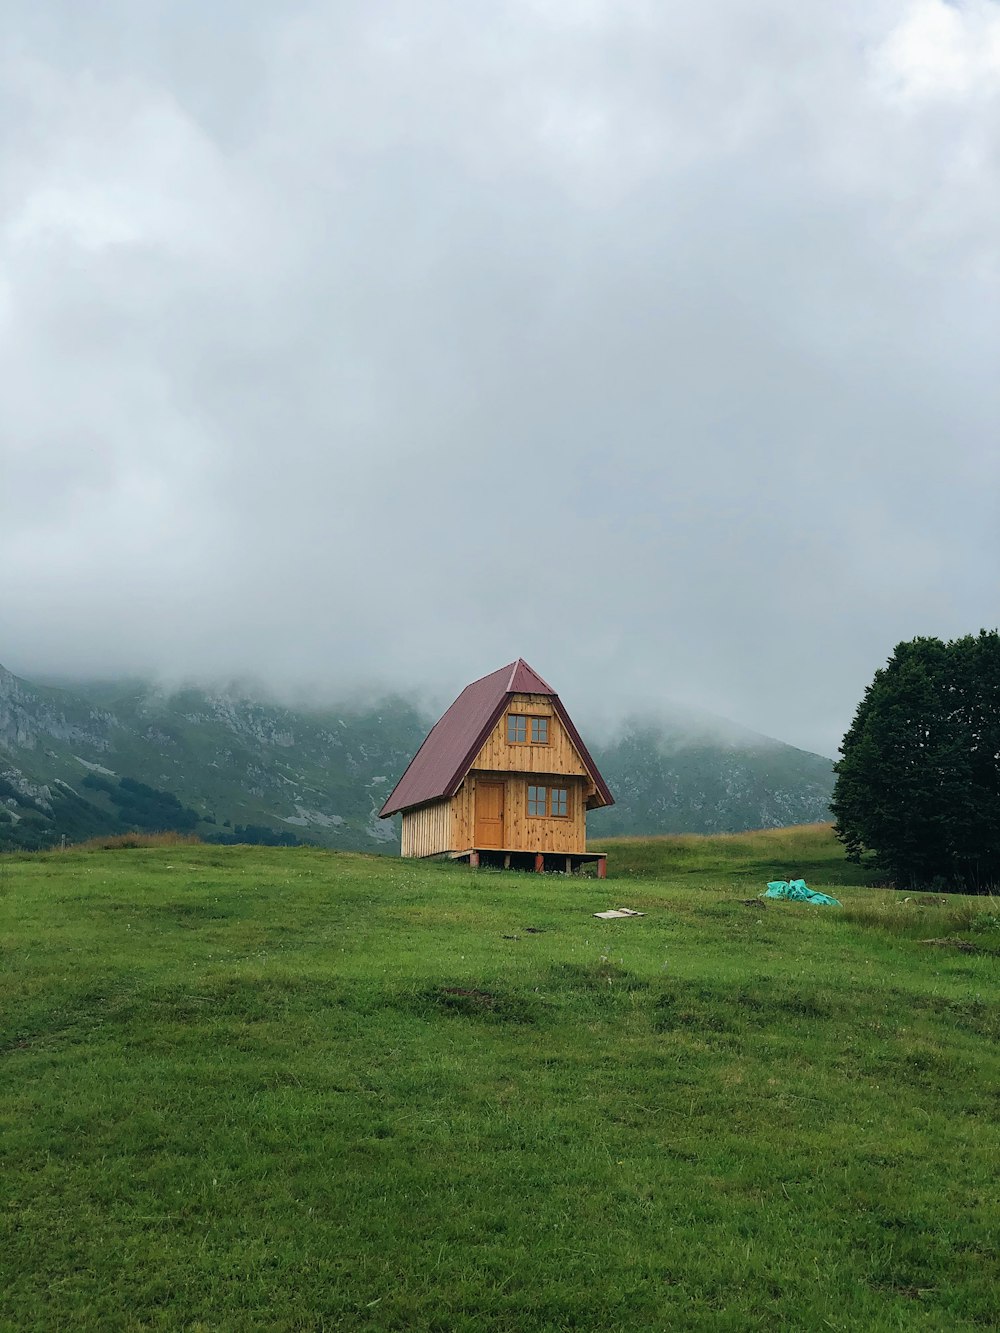 casa de madera marrón en campo de hierba verde cerca de montañas verdes bajo nubes blancas durante el día